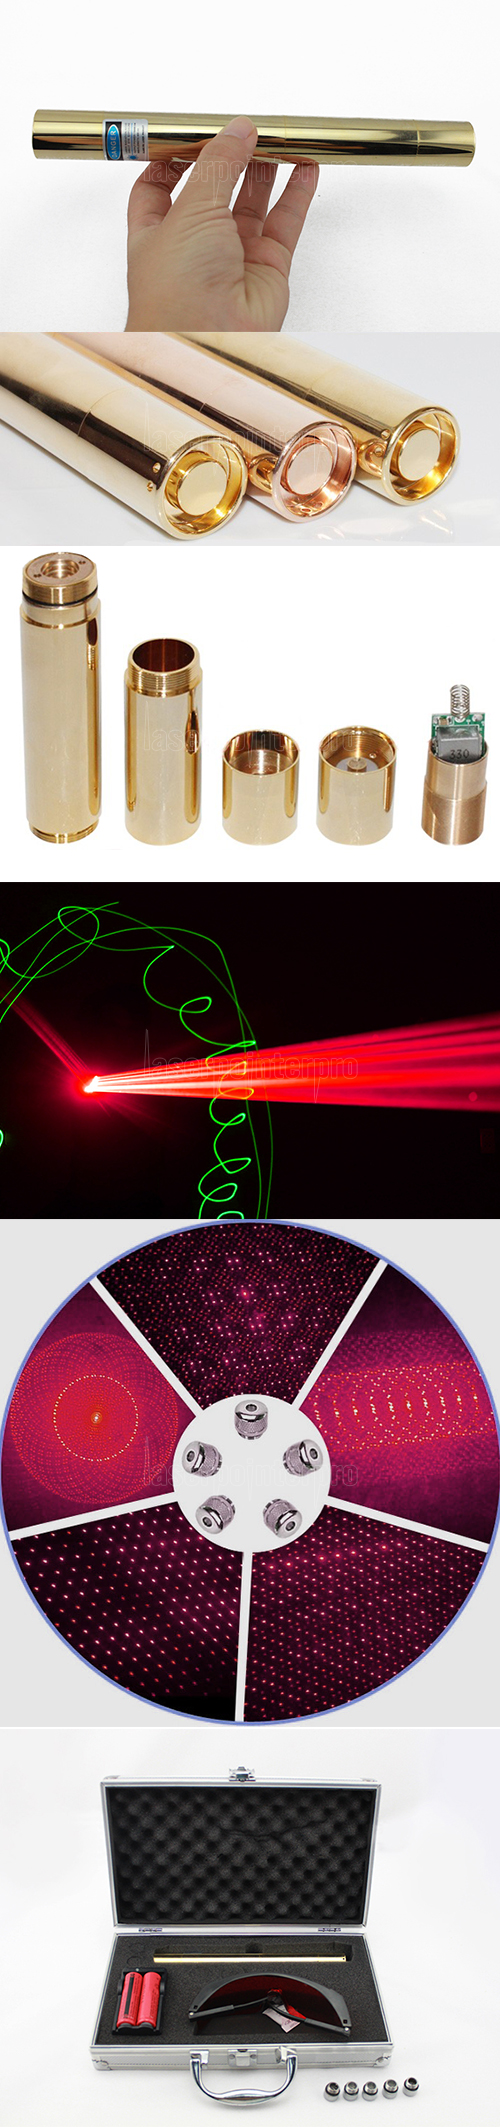 10000mW 650nm feixe de luz Superhigh Power Laser Pointer Pen Kit dourado